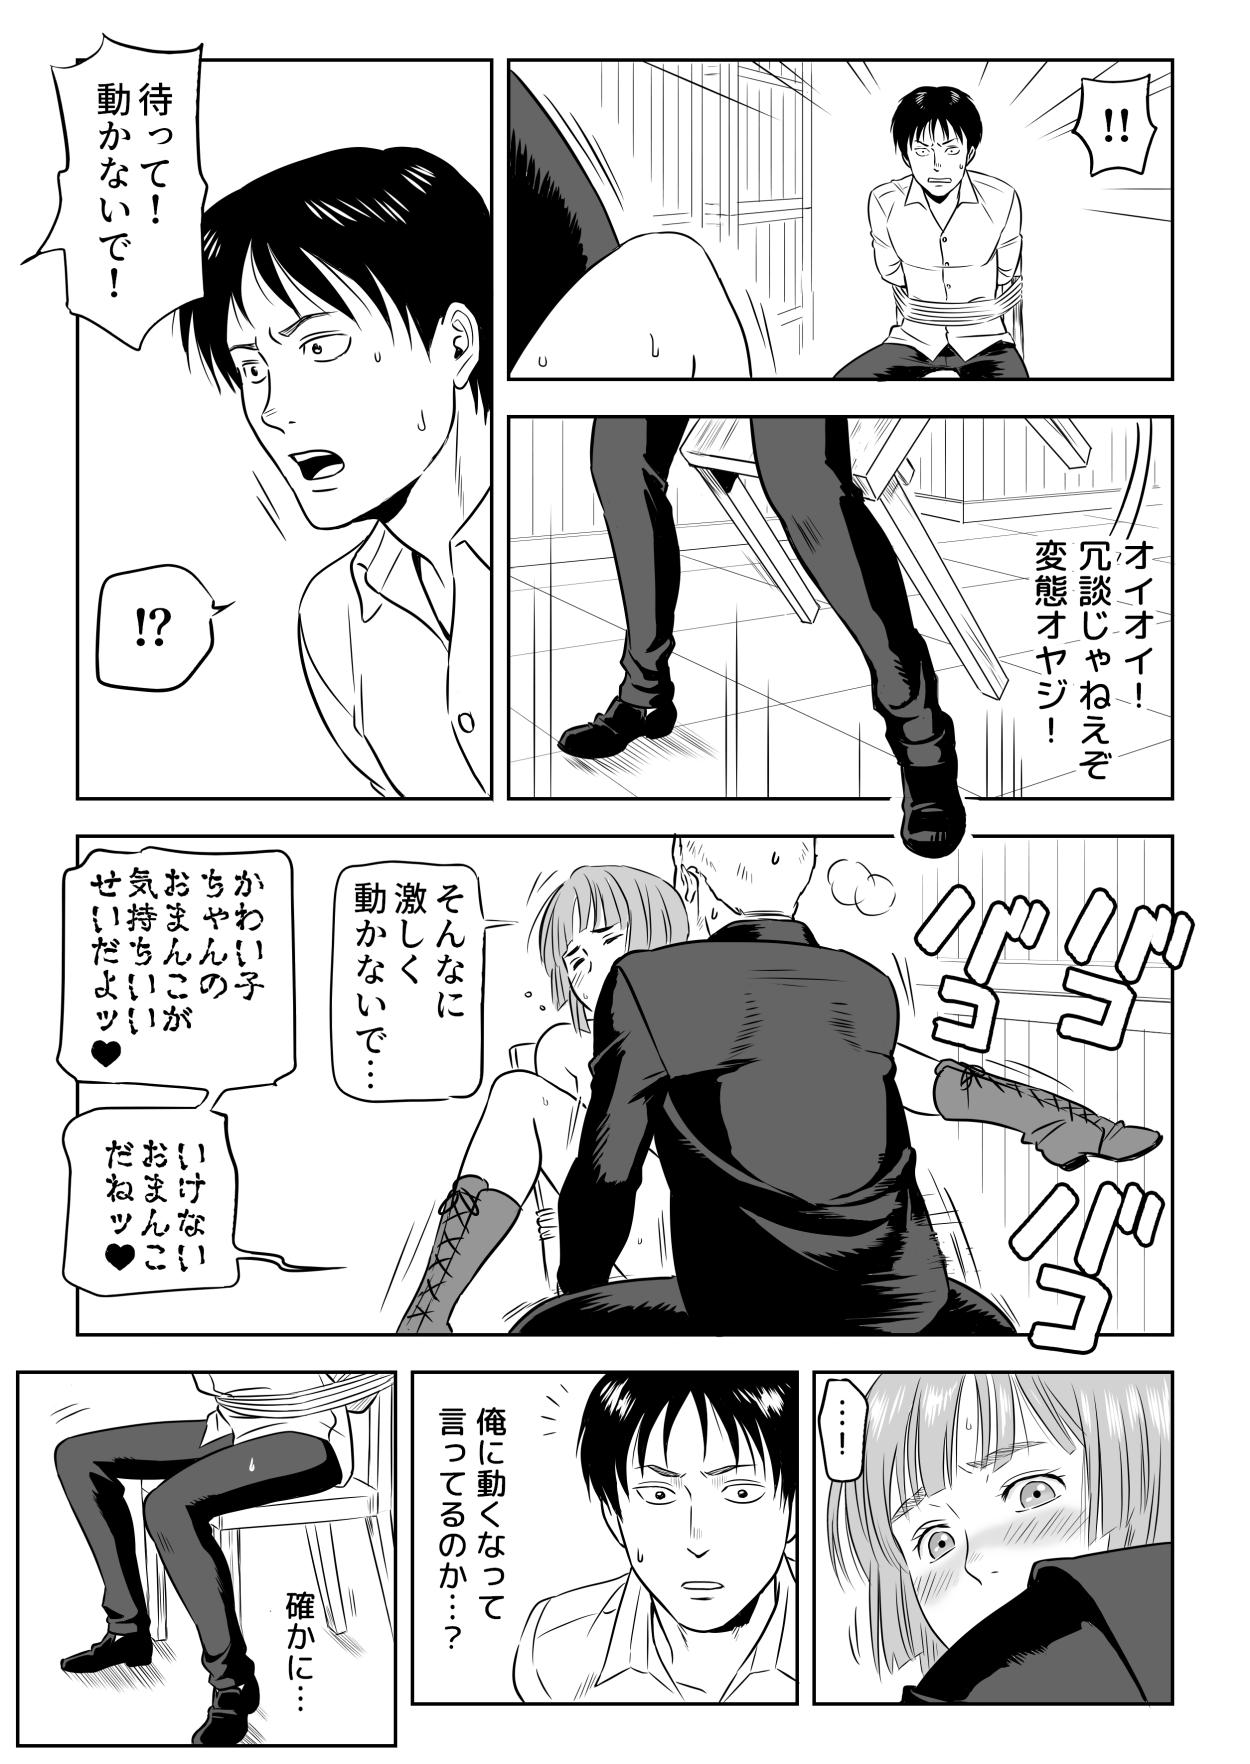 Dorm 13-kan no Otori Sakusen - Shingeki no kyojin | attack on titan Uncut - Page 12